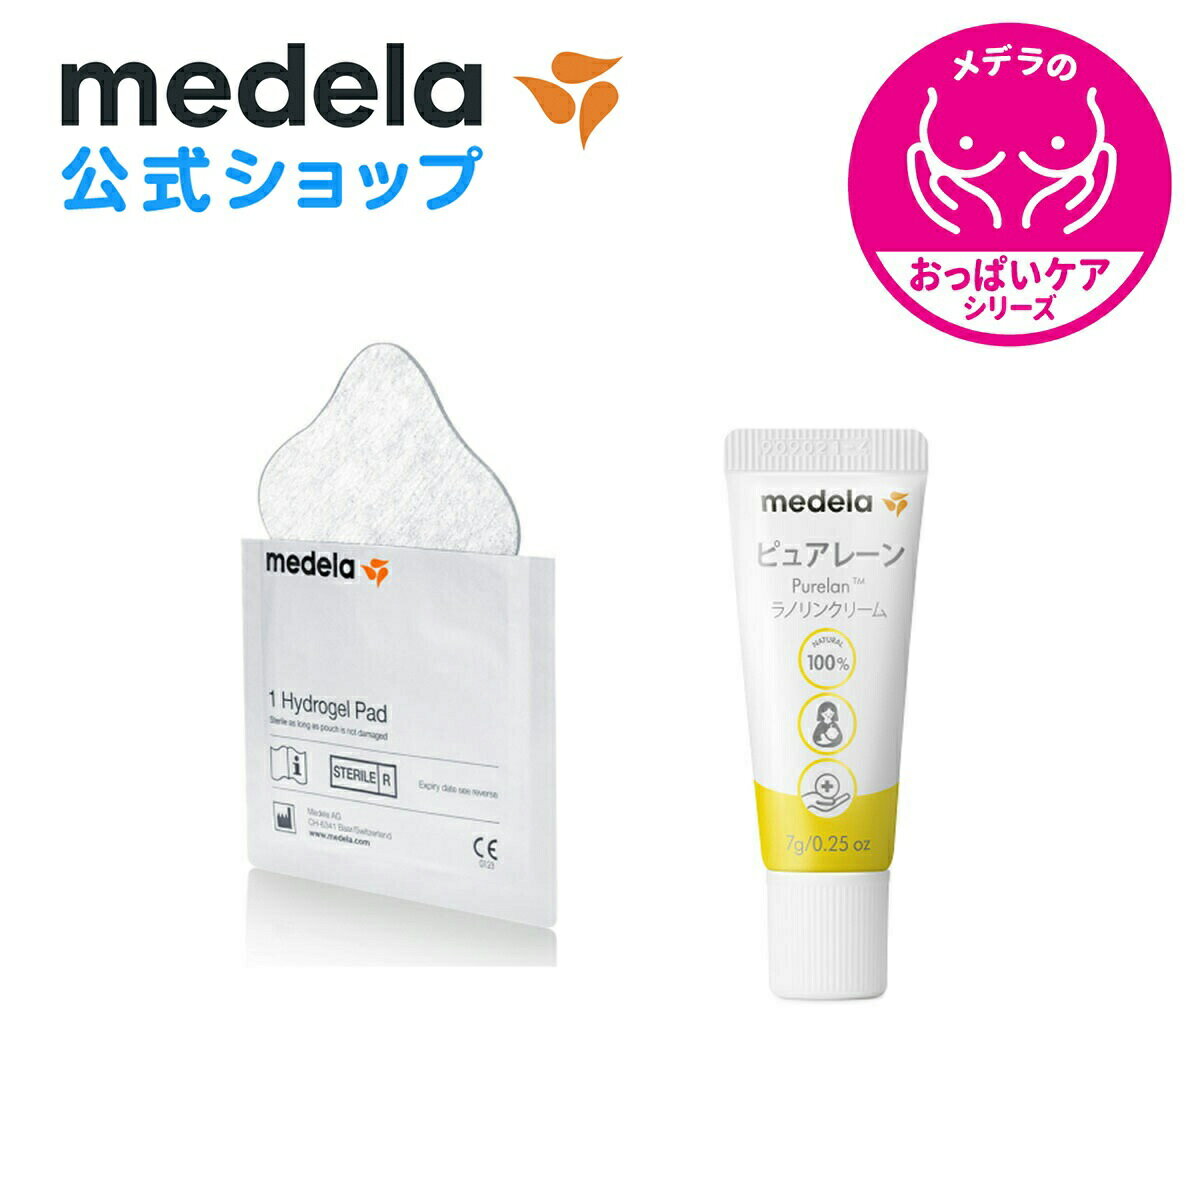 公式 Medela (メデラ)【日本正規品】おっぱいケアセットB ピュアレーン 7g + ハイドロジェルパッド (4枚入り) 乳頭保護クリーム 乳頭ケアクリーム medela 母乳育児